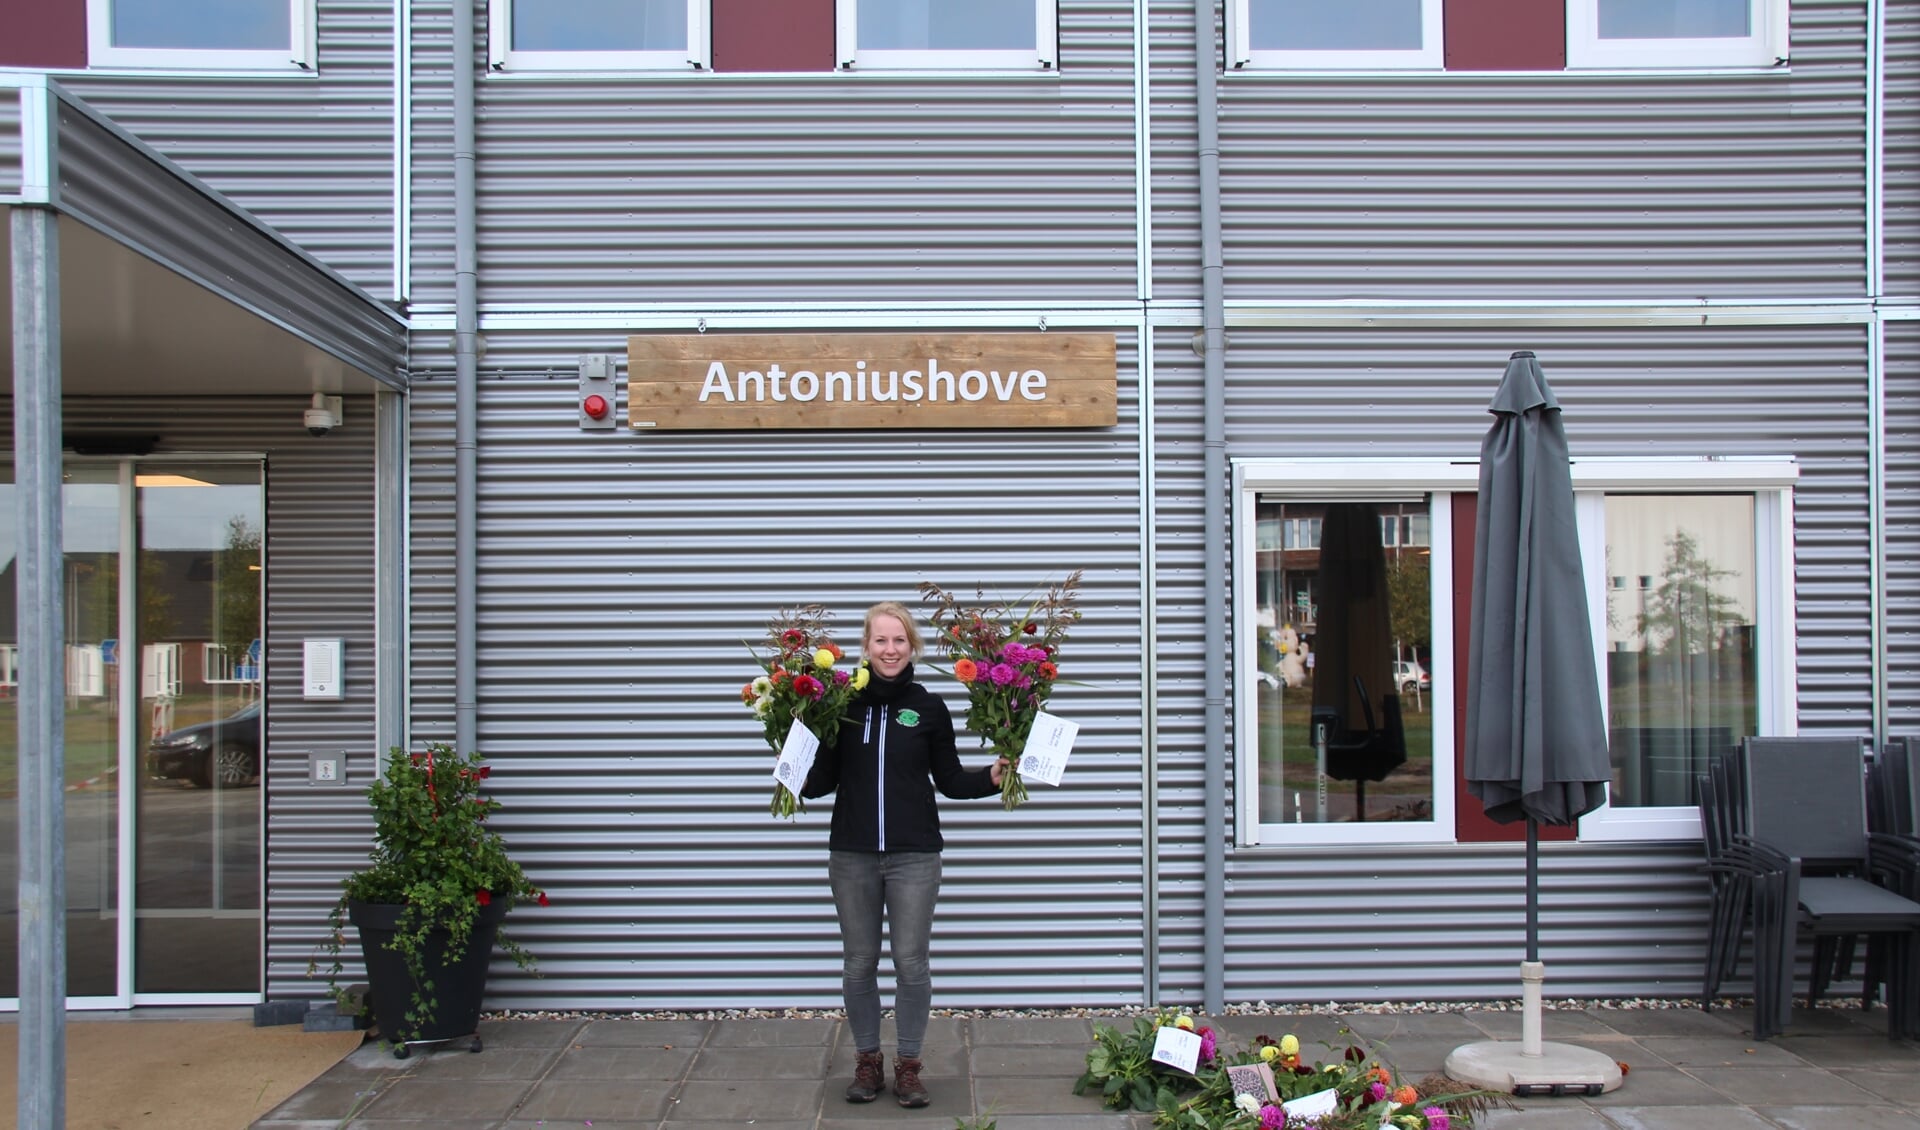 Een fleurig welkom voor de bewoners van de tijdelijke locatie van de Antoniushove. Foto: PR Veur Mekare?!